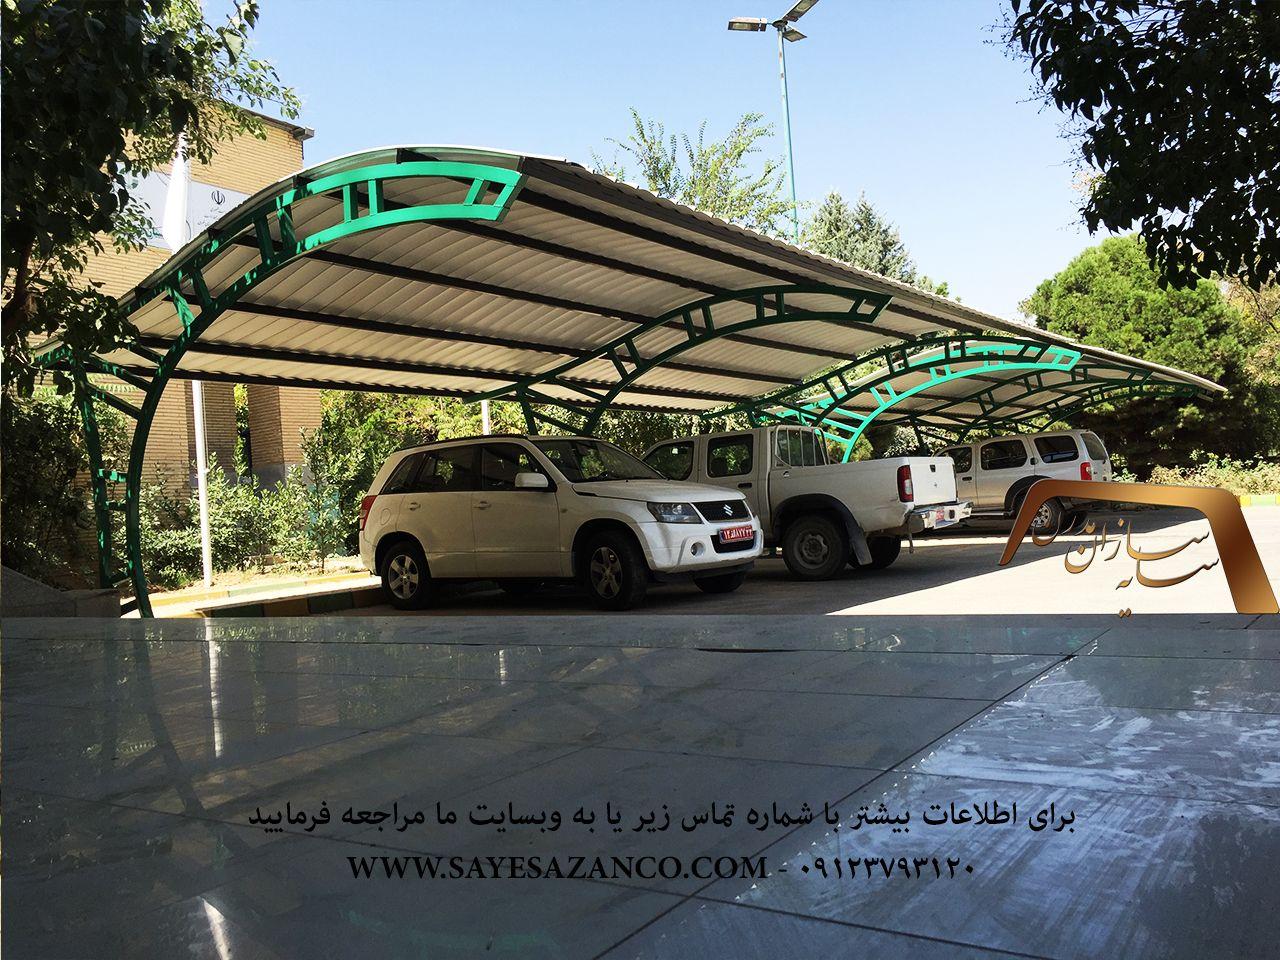 ساخت سایبان برای خودرو ، سایبان پارکینگ ،سایه بان ماشین ،سایبان حیاط و سایبان اداری در تهرانفکرج و مشهد